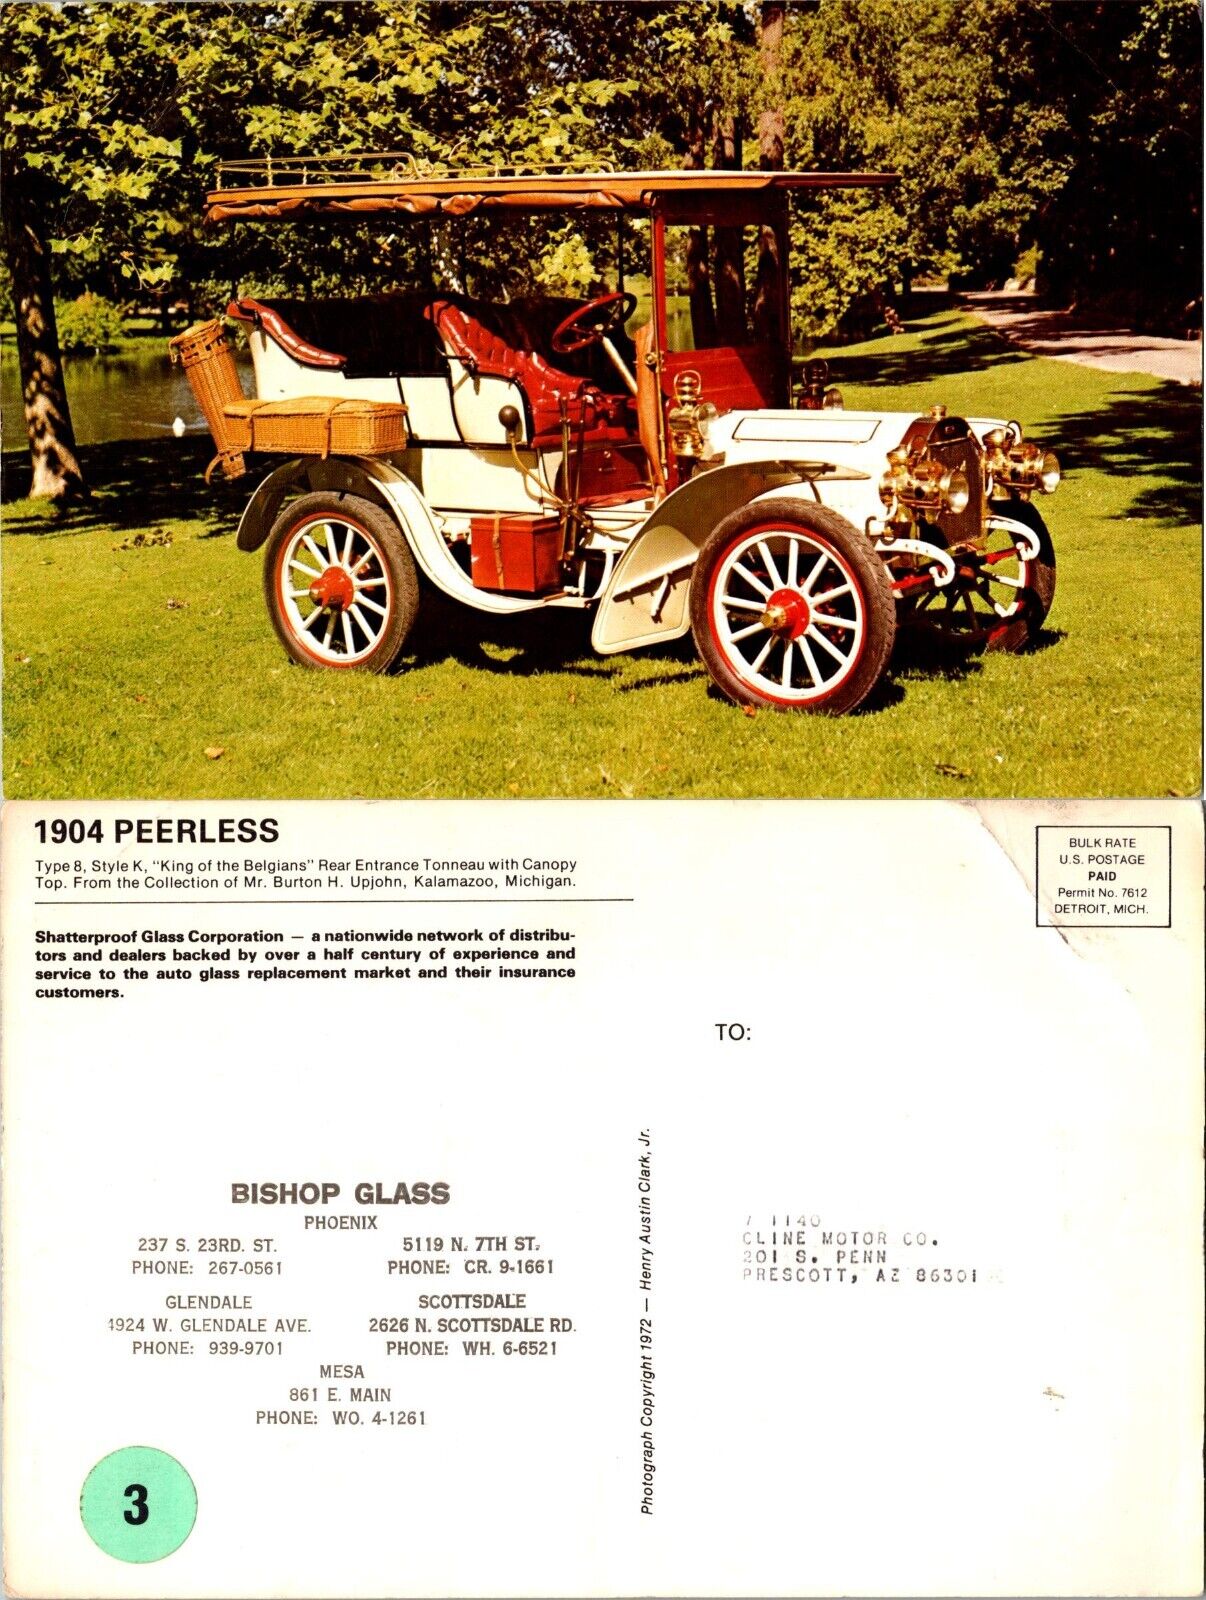 1904 Peerless Vintage Car 6x9 Bishop Glass Advertising Postcard c1940s